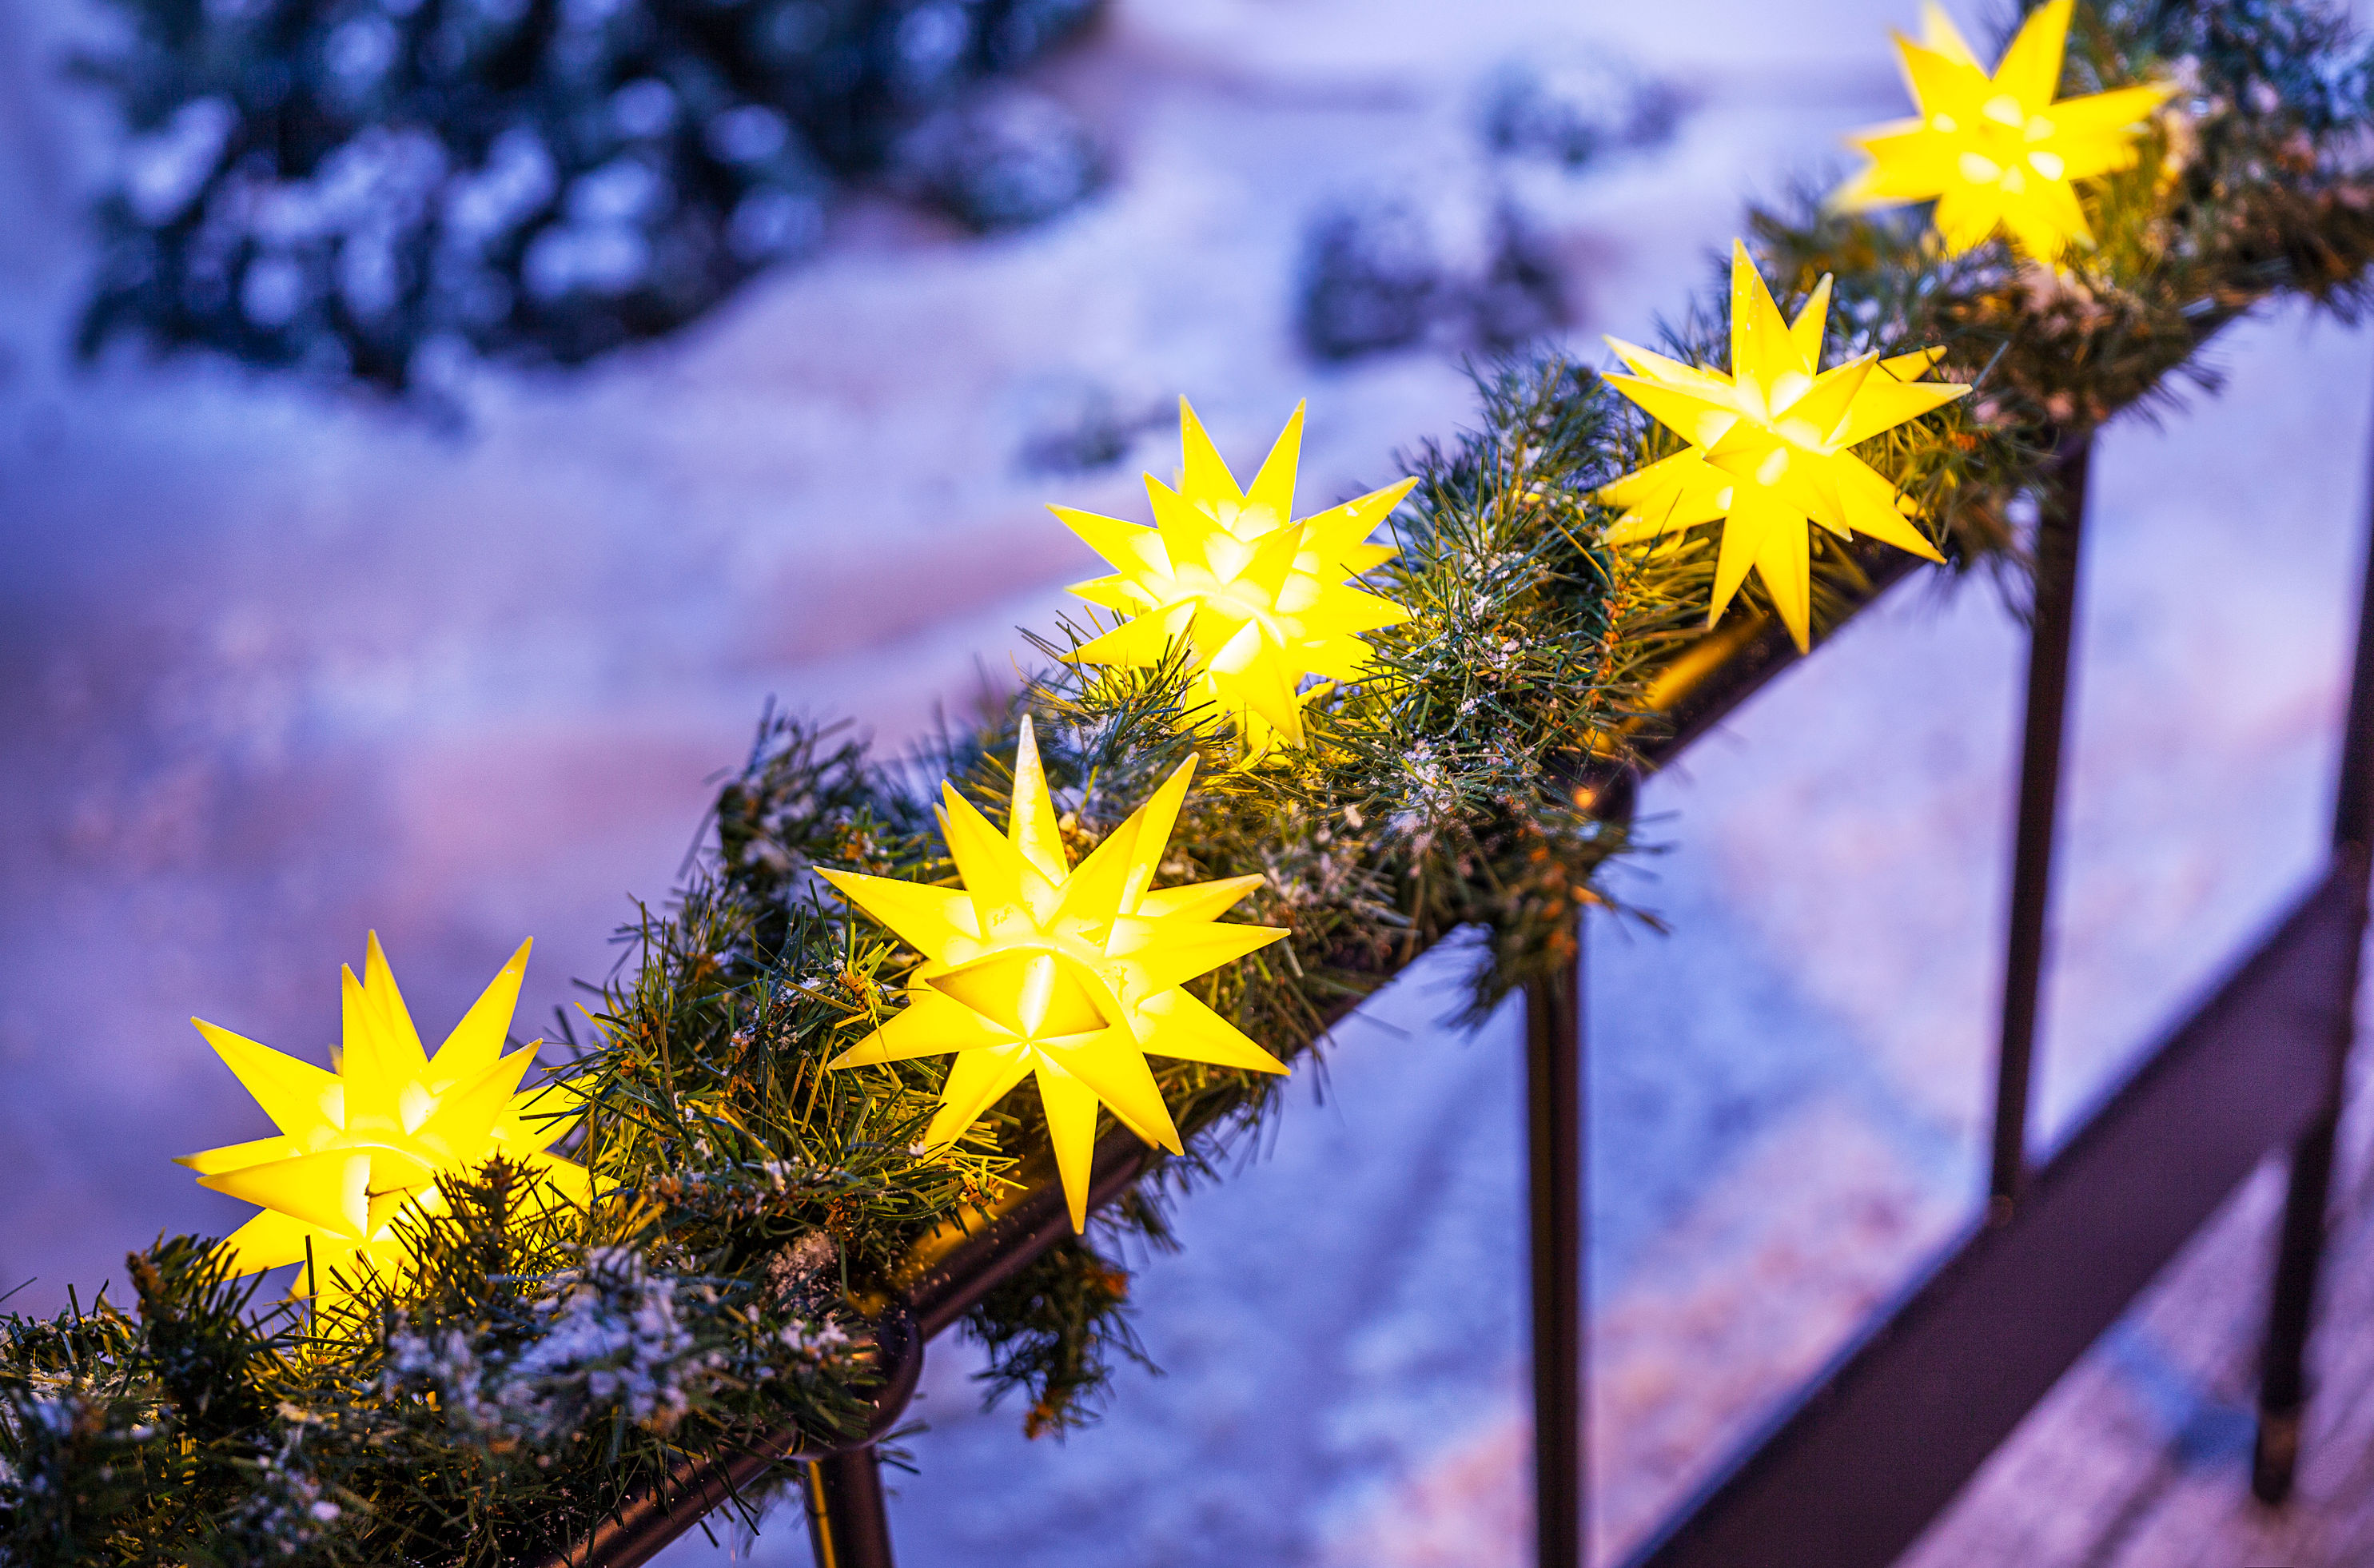 LED-Lichterkette Weihnachtsstern Farbe: gelb | Weltbild.at